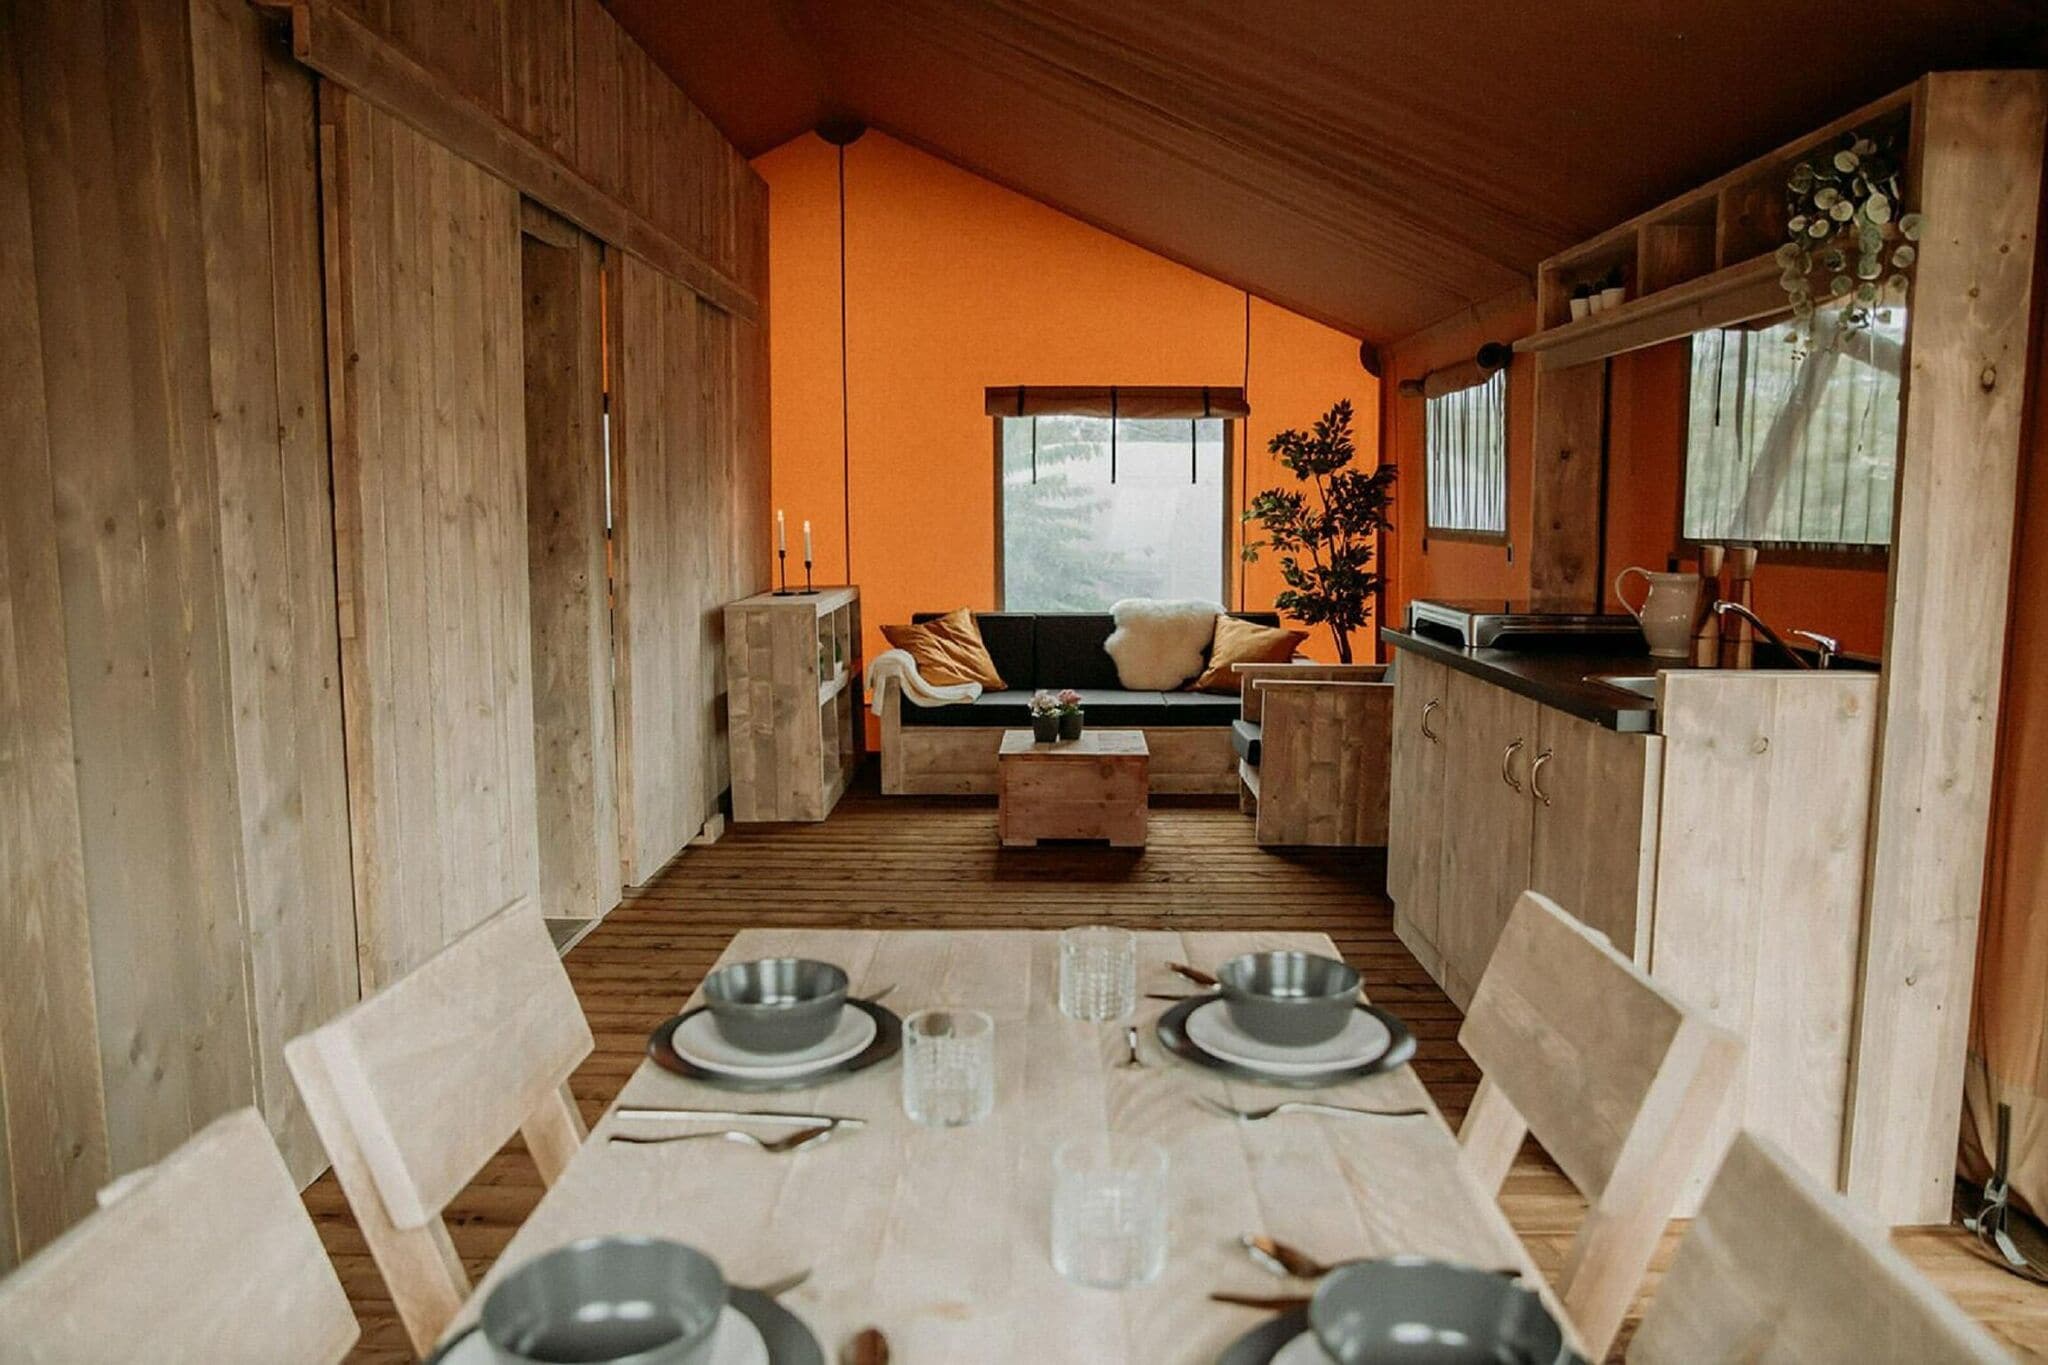 Luxuszelt mit Dusche und Küche auf einem Pop-up-Campingplatz